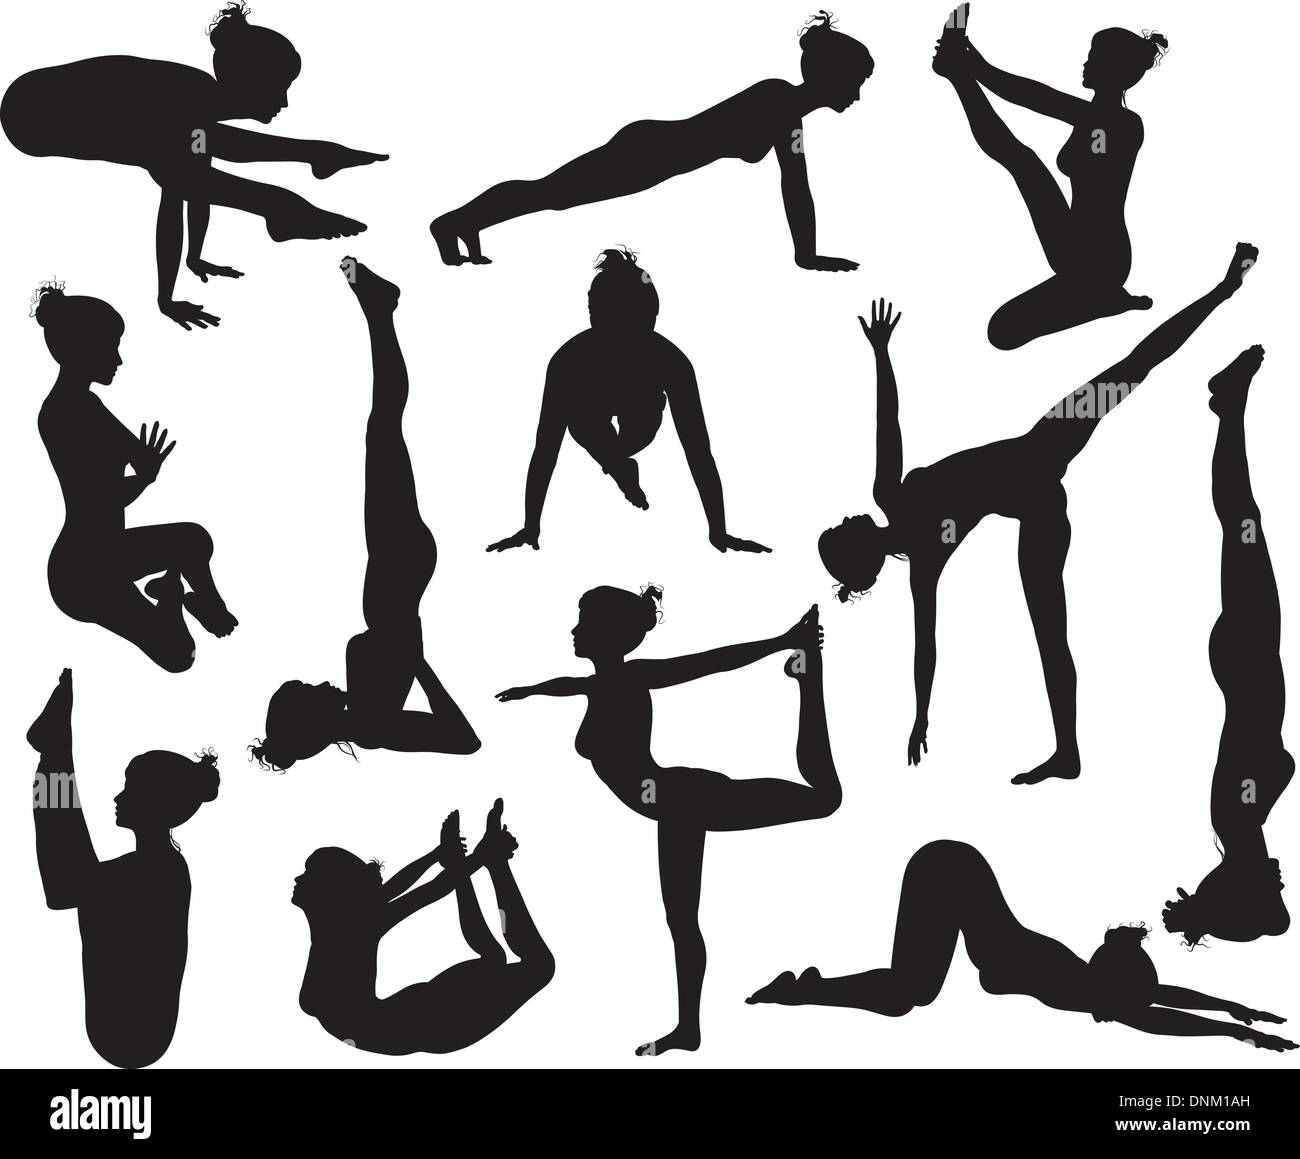 Un jeu de grande qualité très détaillées des silhouettes yoga pose Illustration de Vecteur